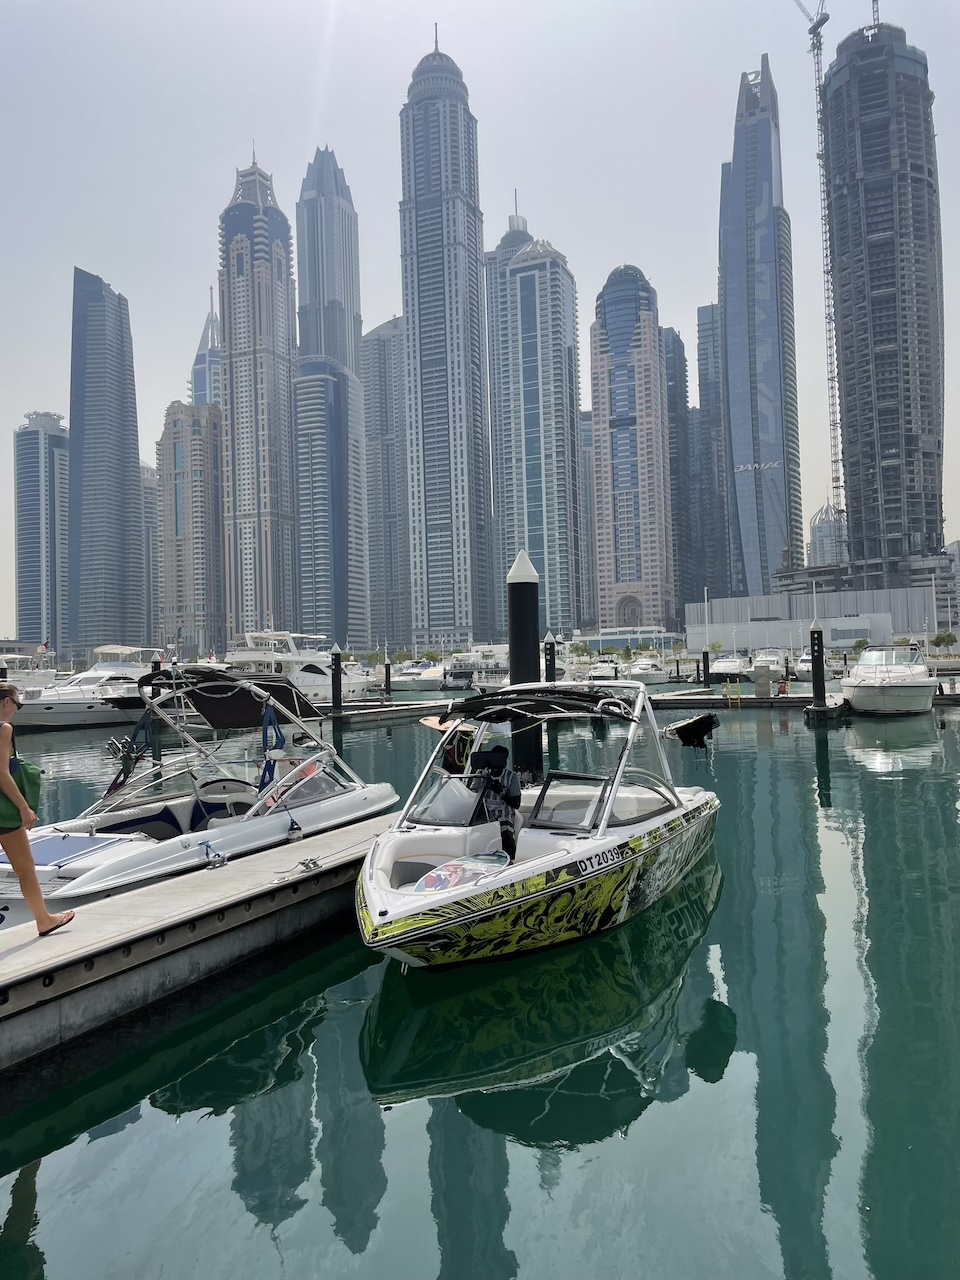 Cruceros de exploración: Descubriendo las joyas ocultas de Dubái desde un yate